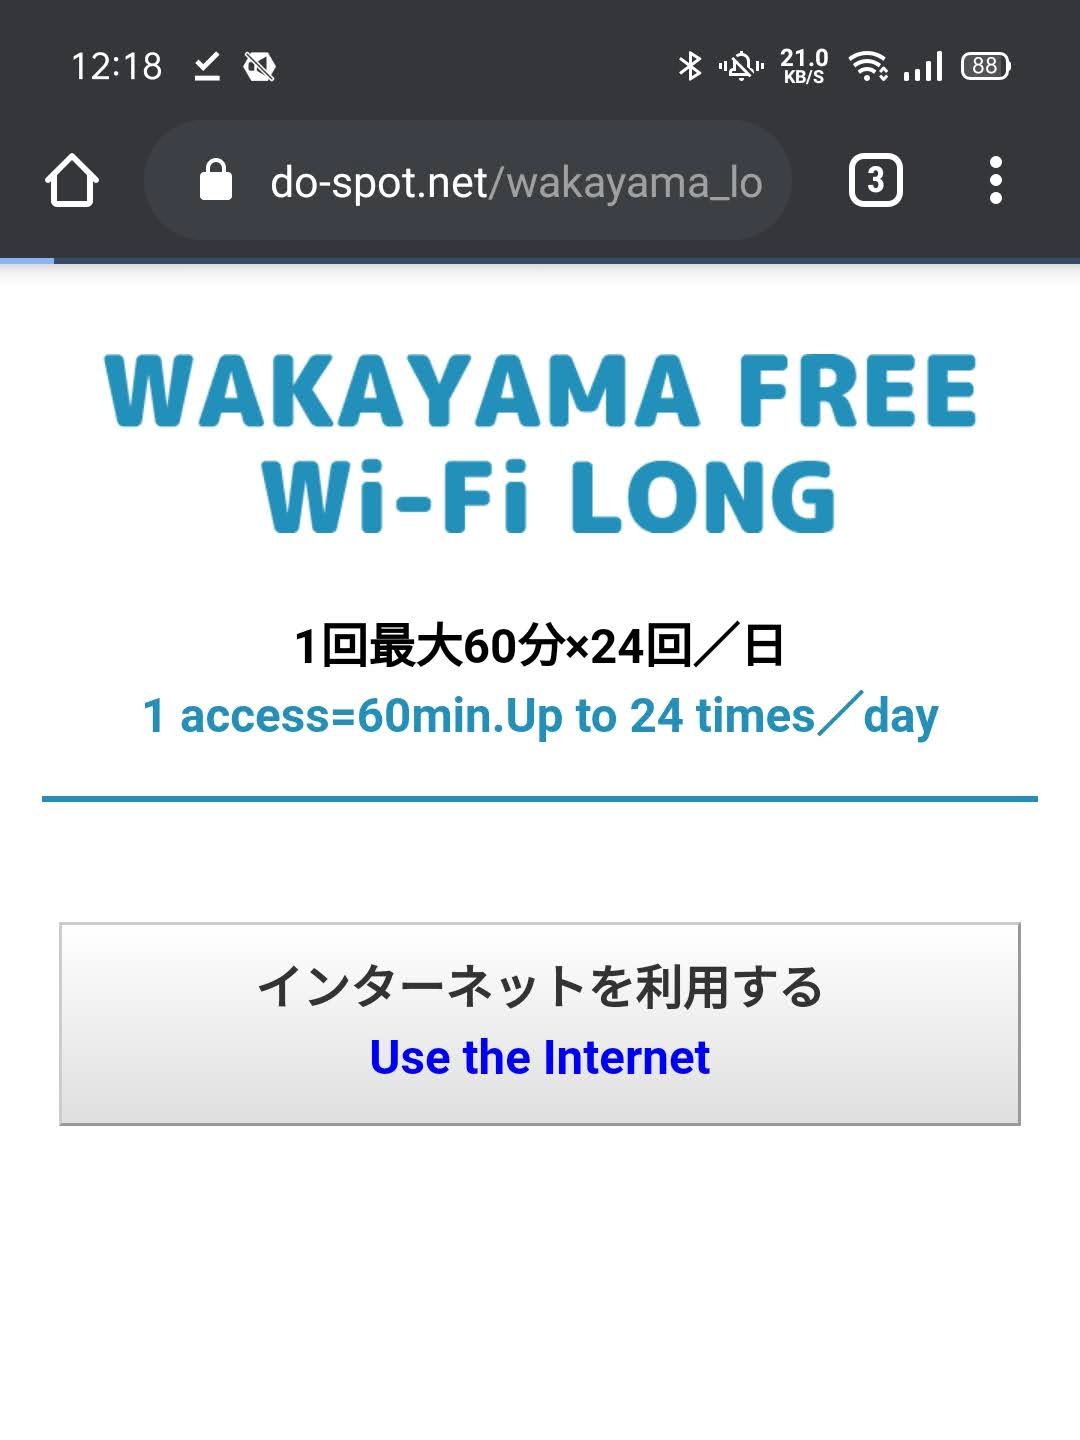 WAKAYAMA FREE Wi-Fi